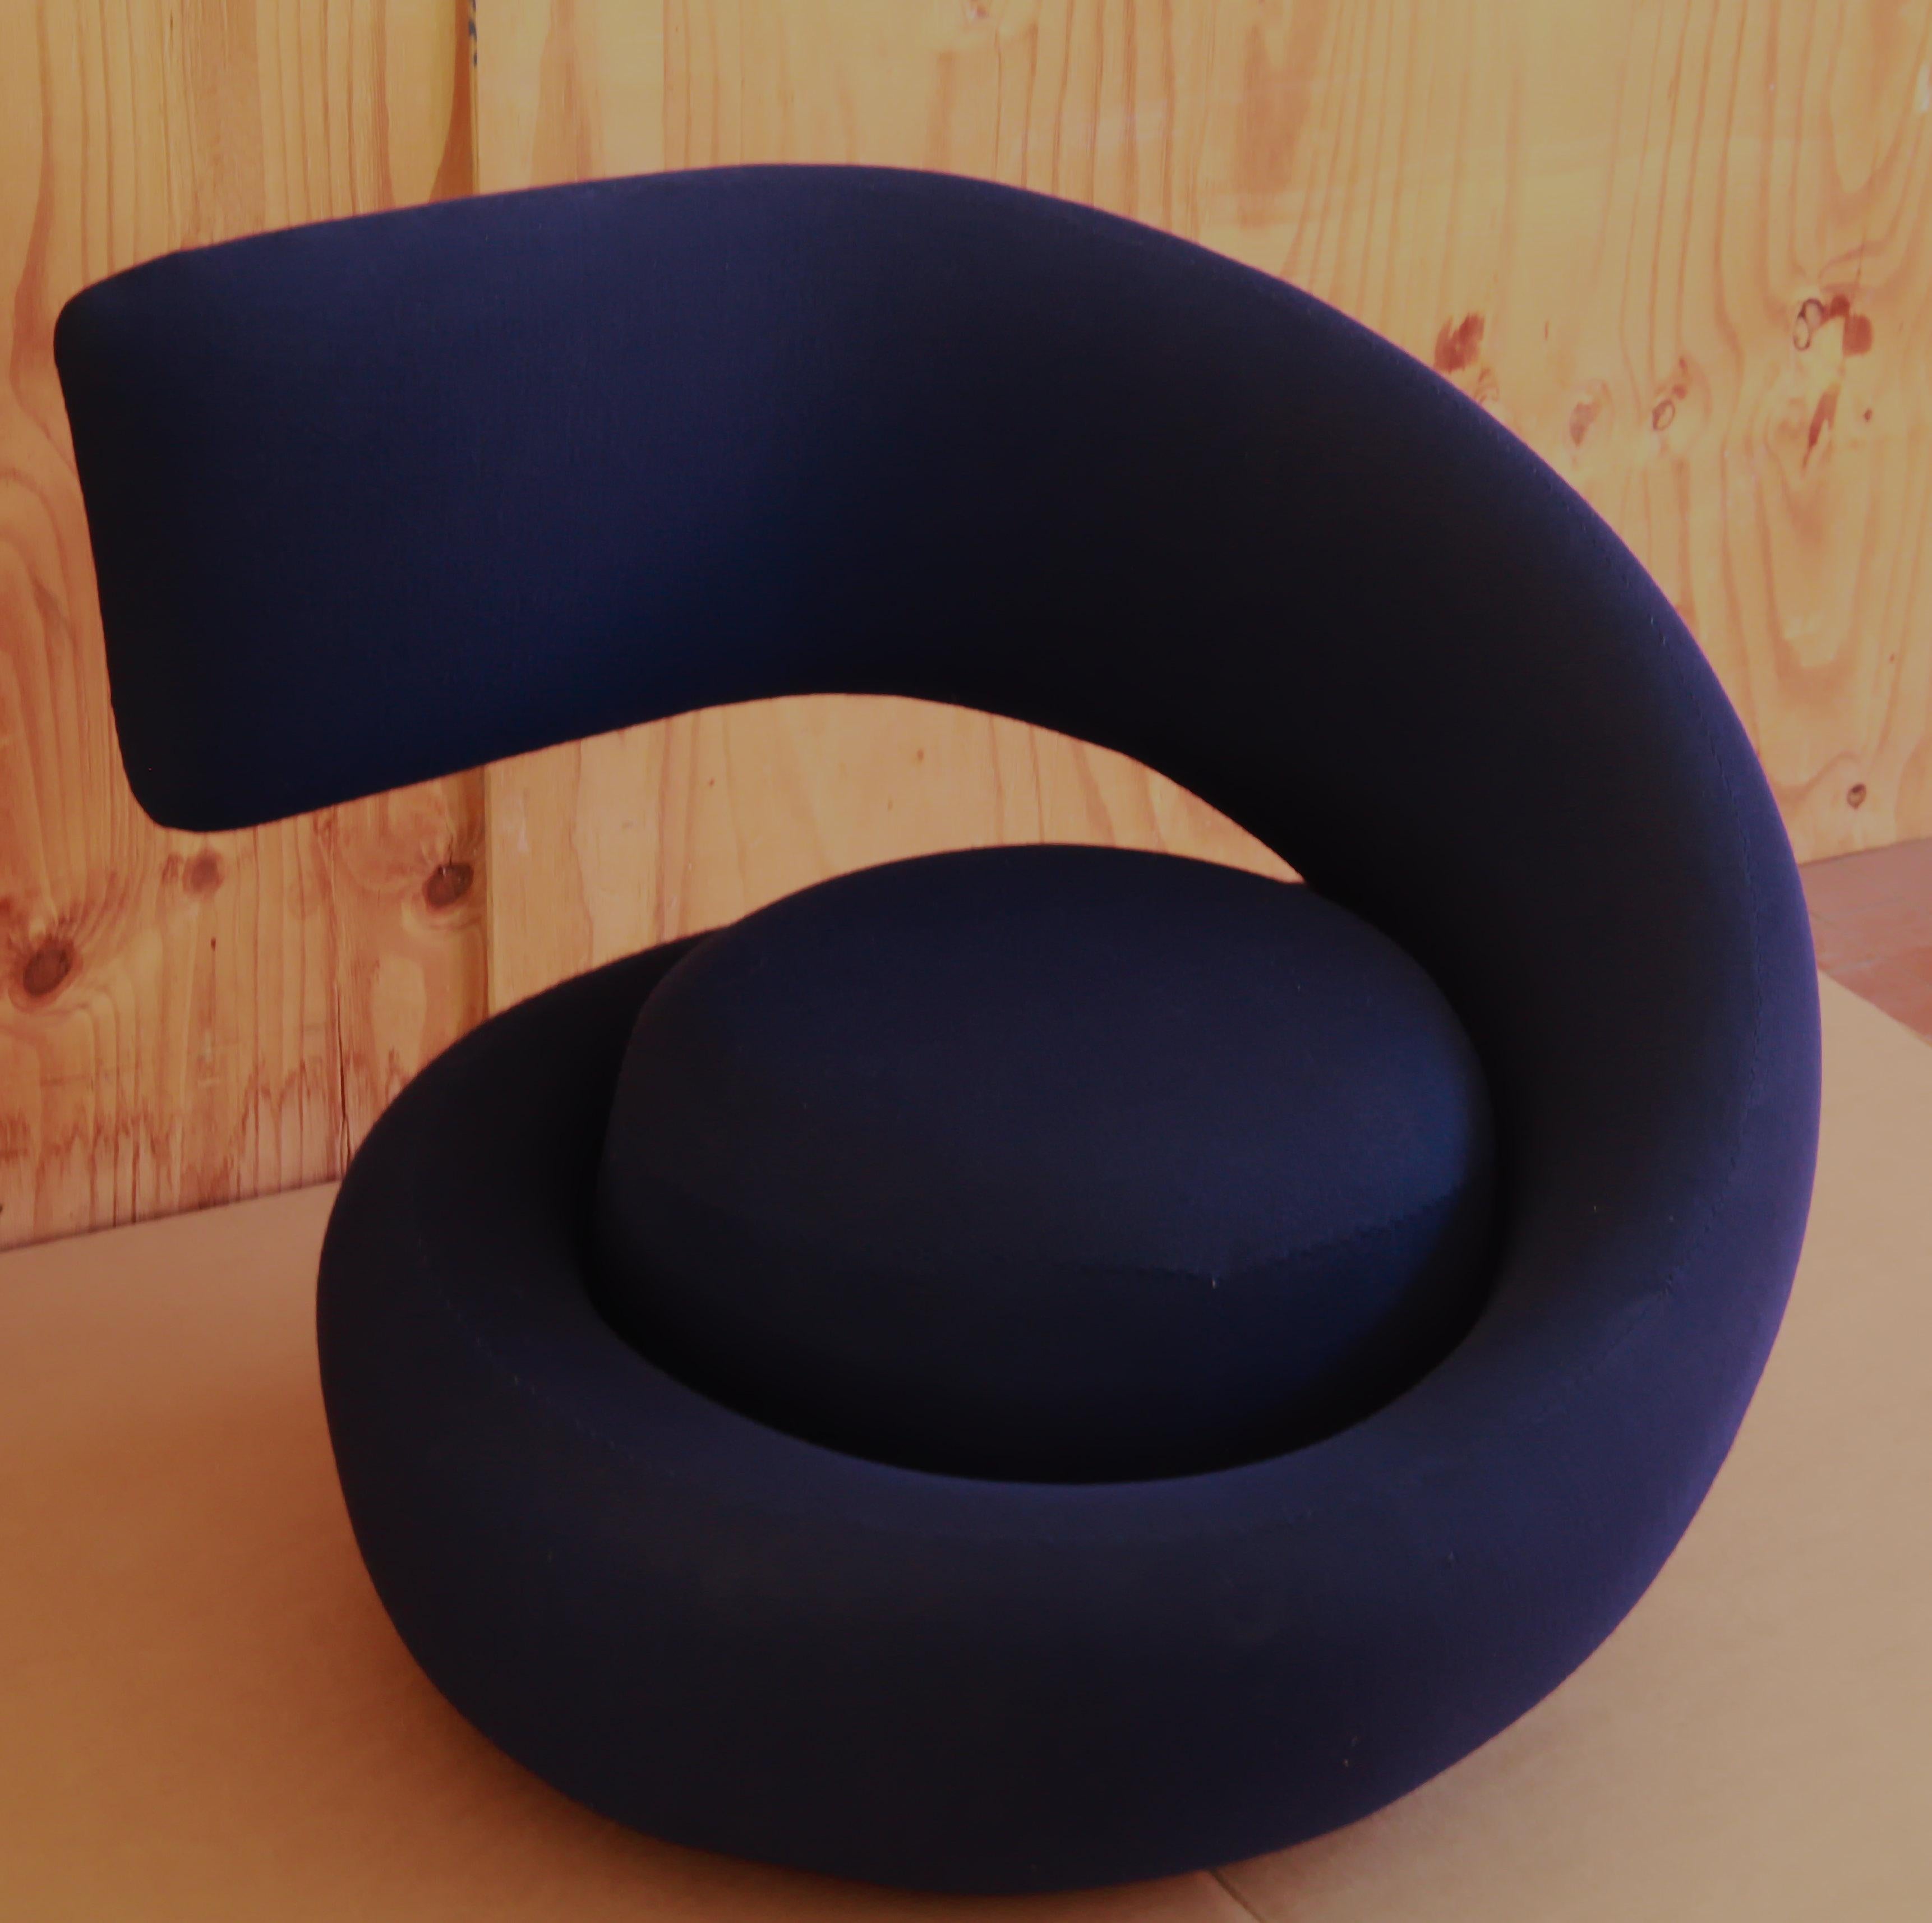 Italian Marzio Cecchi Visionaire Spiral Nest Armchair, Blue Fabric Unique from the 60s